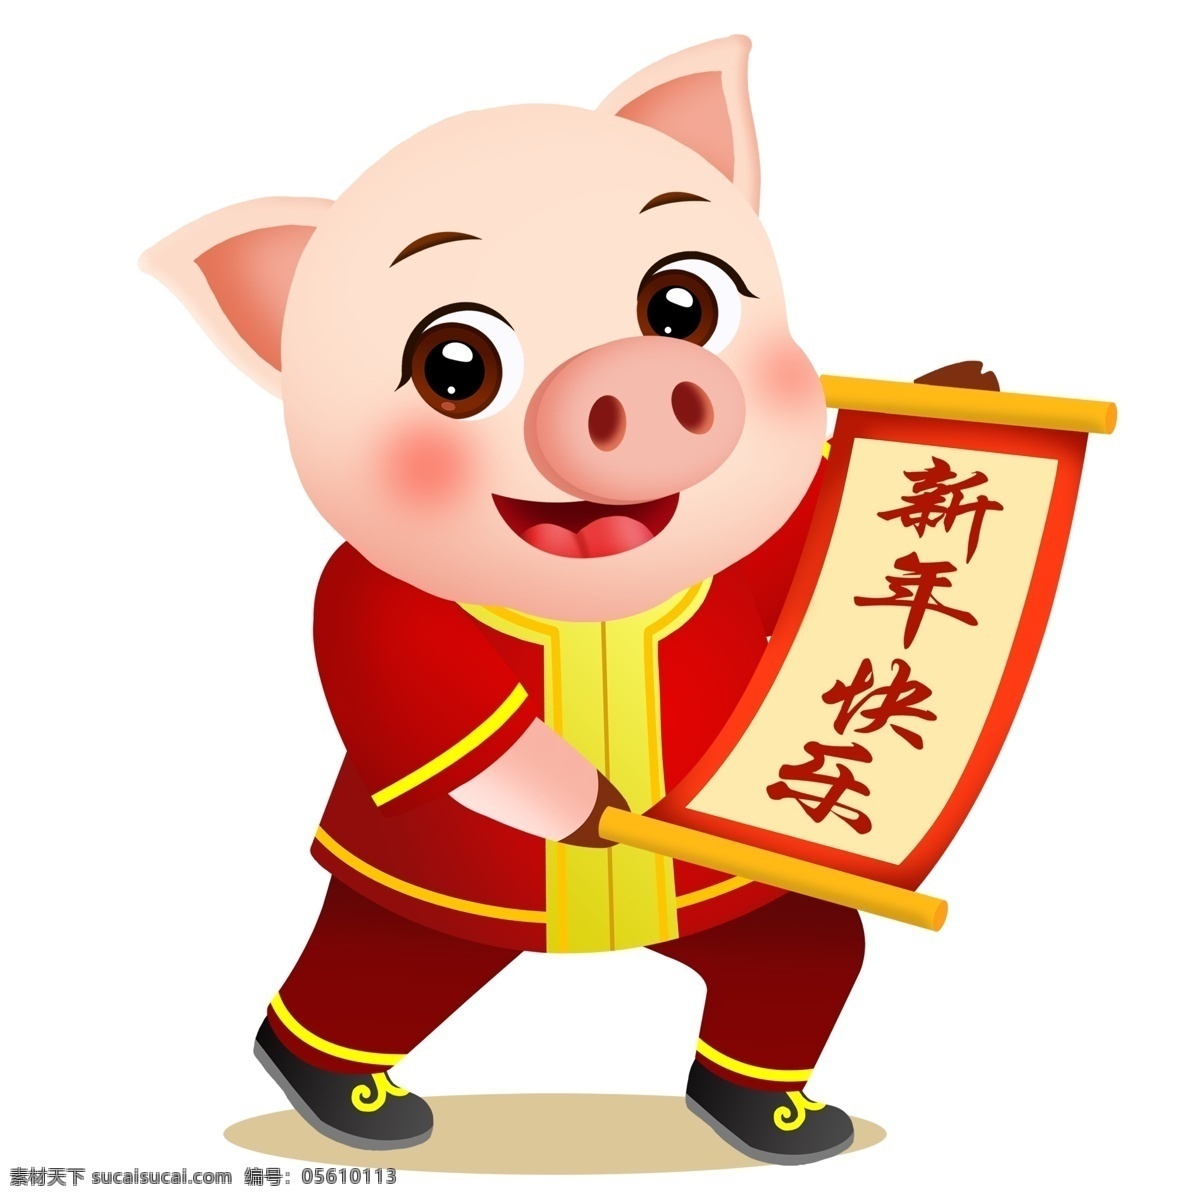 喜庆 手绘 新年 快乐 小 猪 春节 插画 卷轴 中国风 2019年 猪年元素 小猪形象 猪年形象 卡通 新年快乐